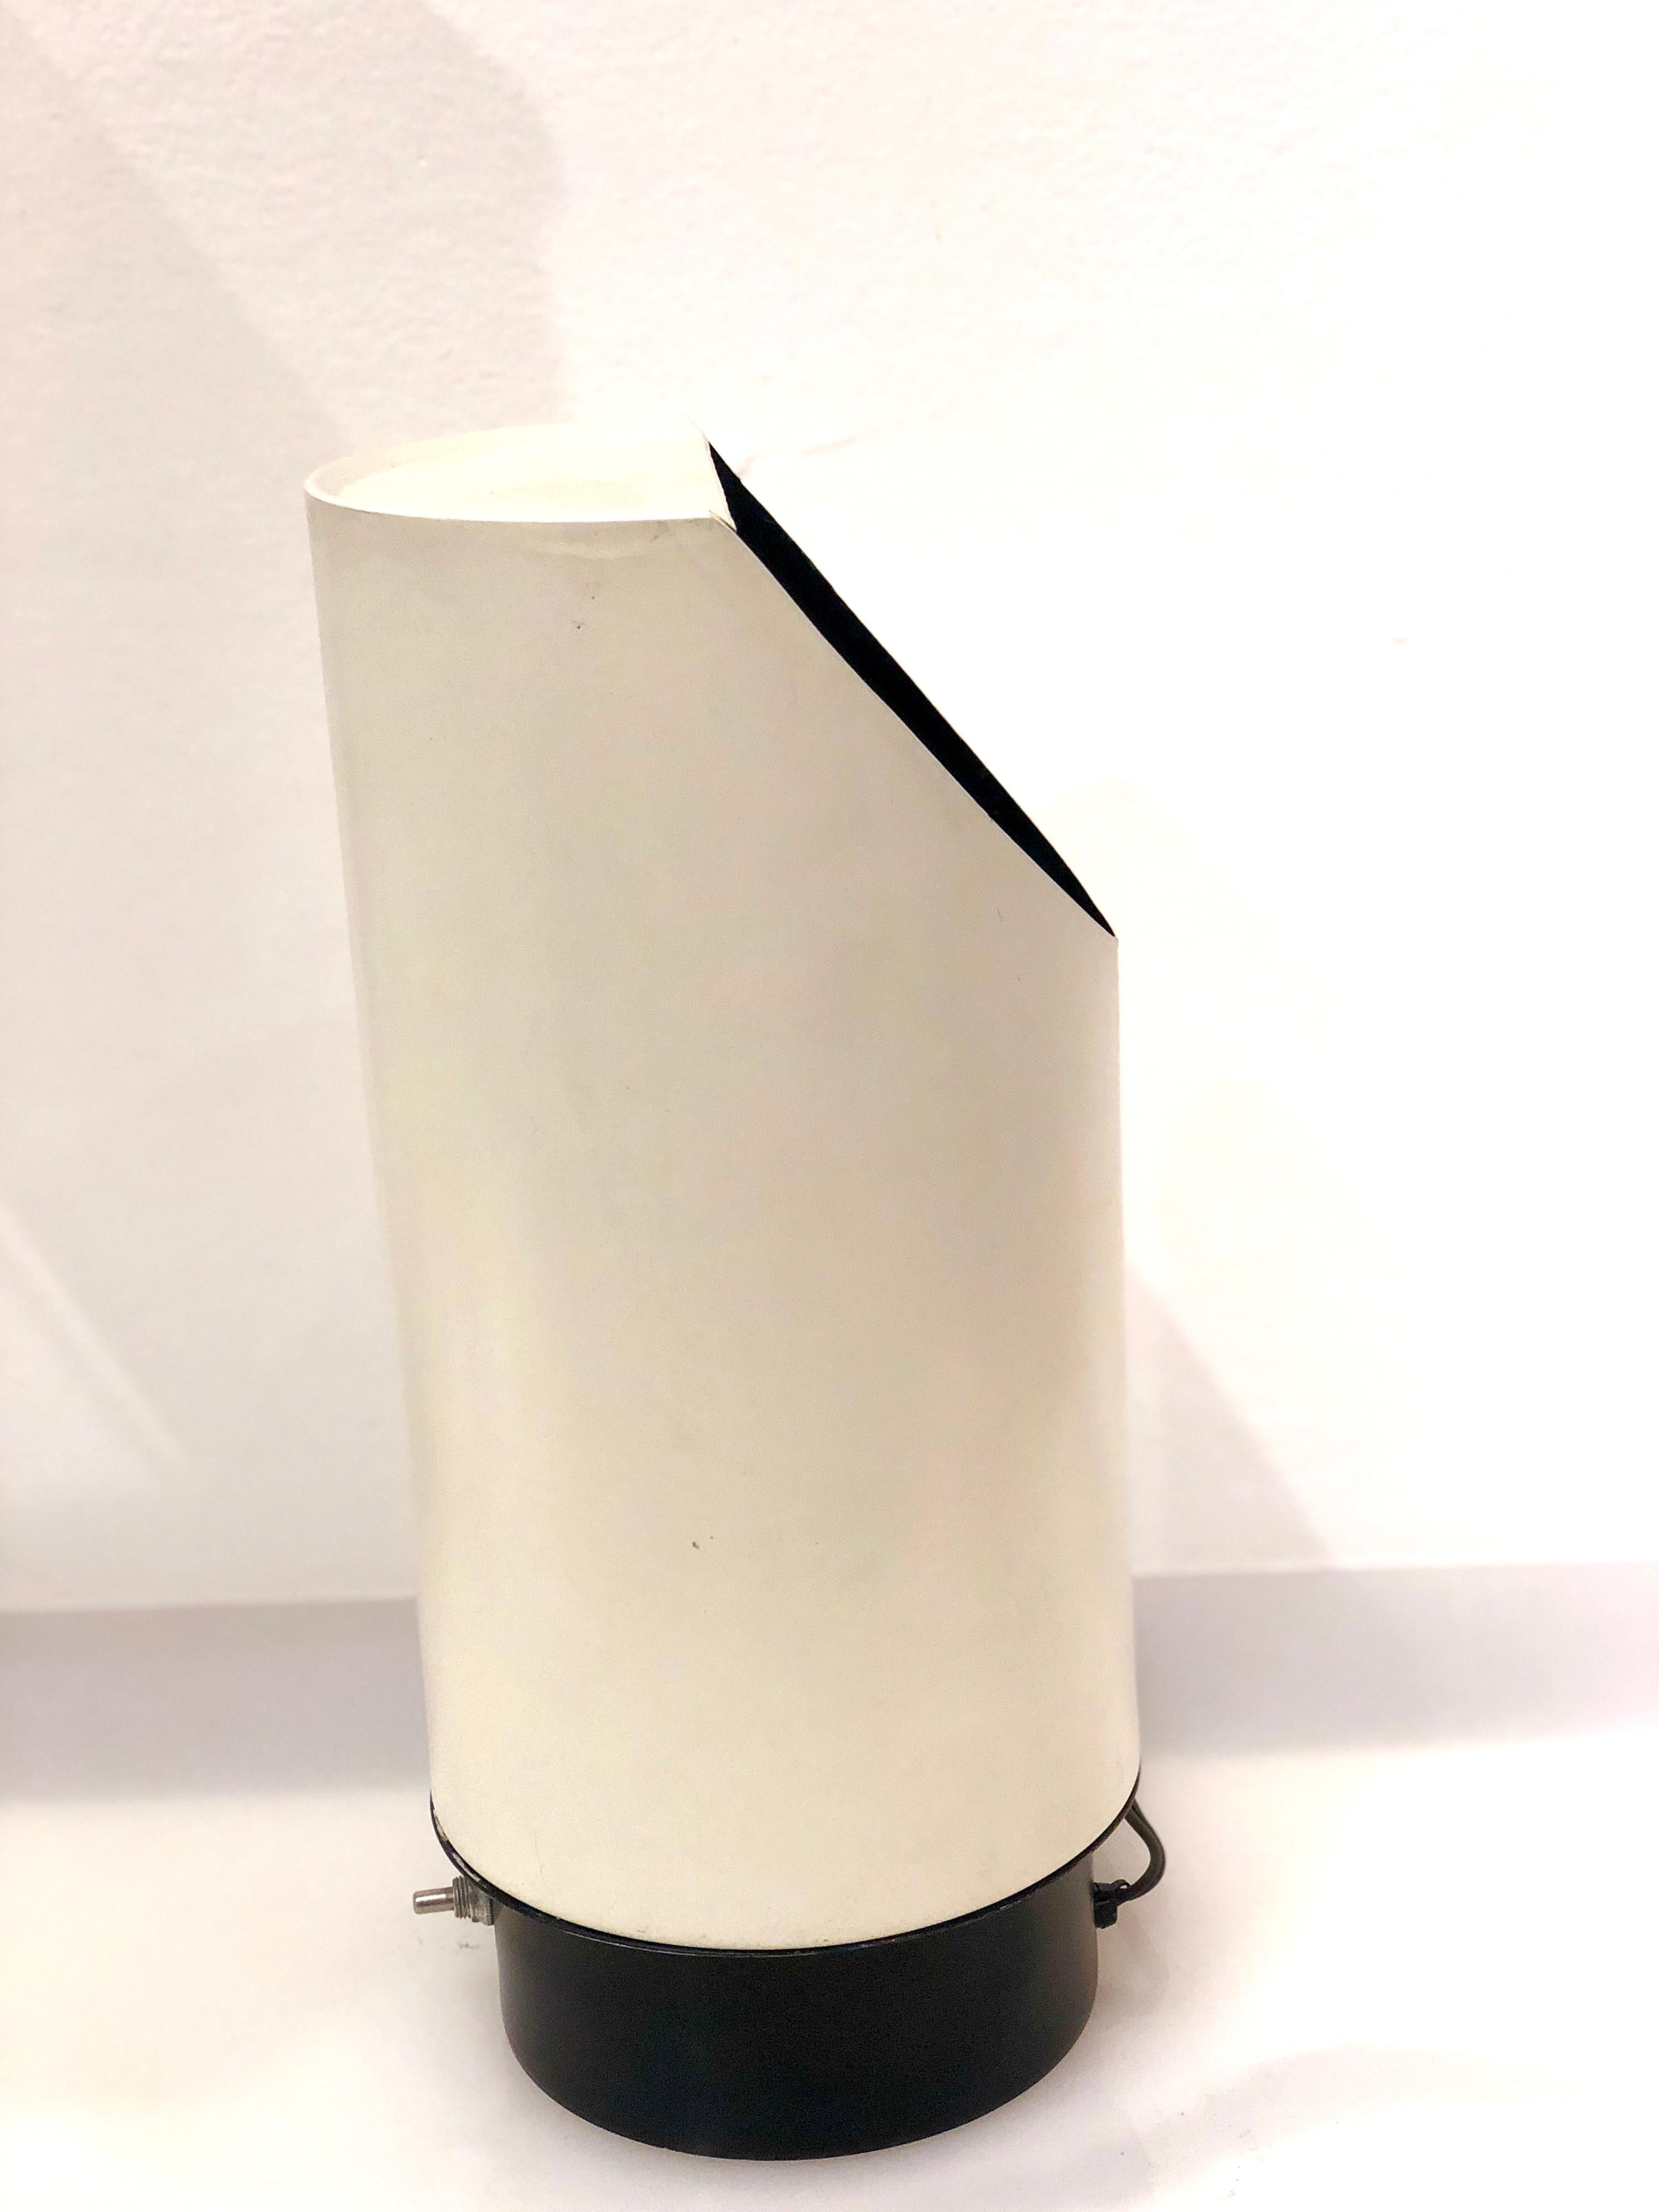 Belle lampe tubulaire à réflecteur, en finition mate émaillée blanche et base noire, en parfait état l'ampoule se projette vers le haut et un réflecteur, projette la lumière à l'extérieur, dans un intérieur noir.